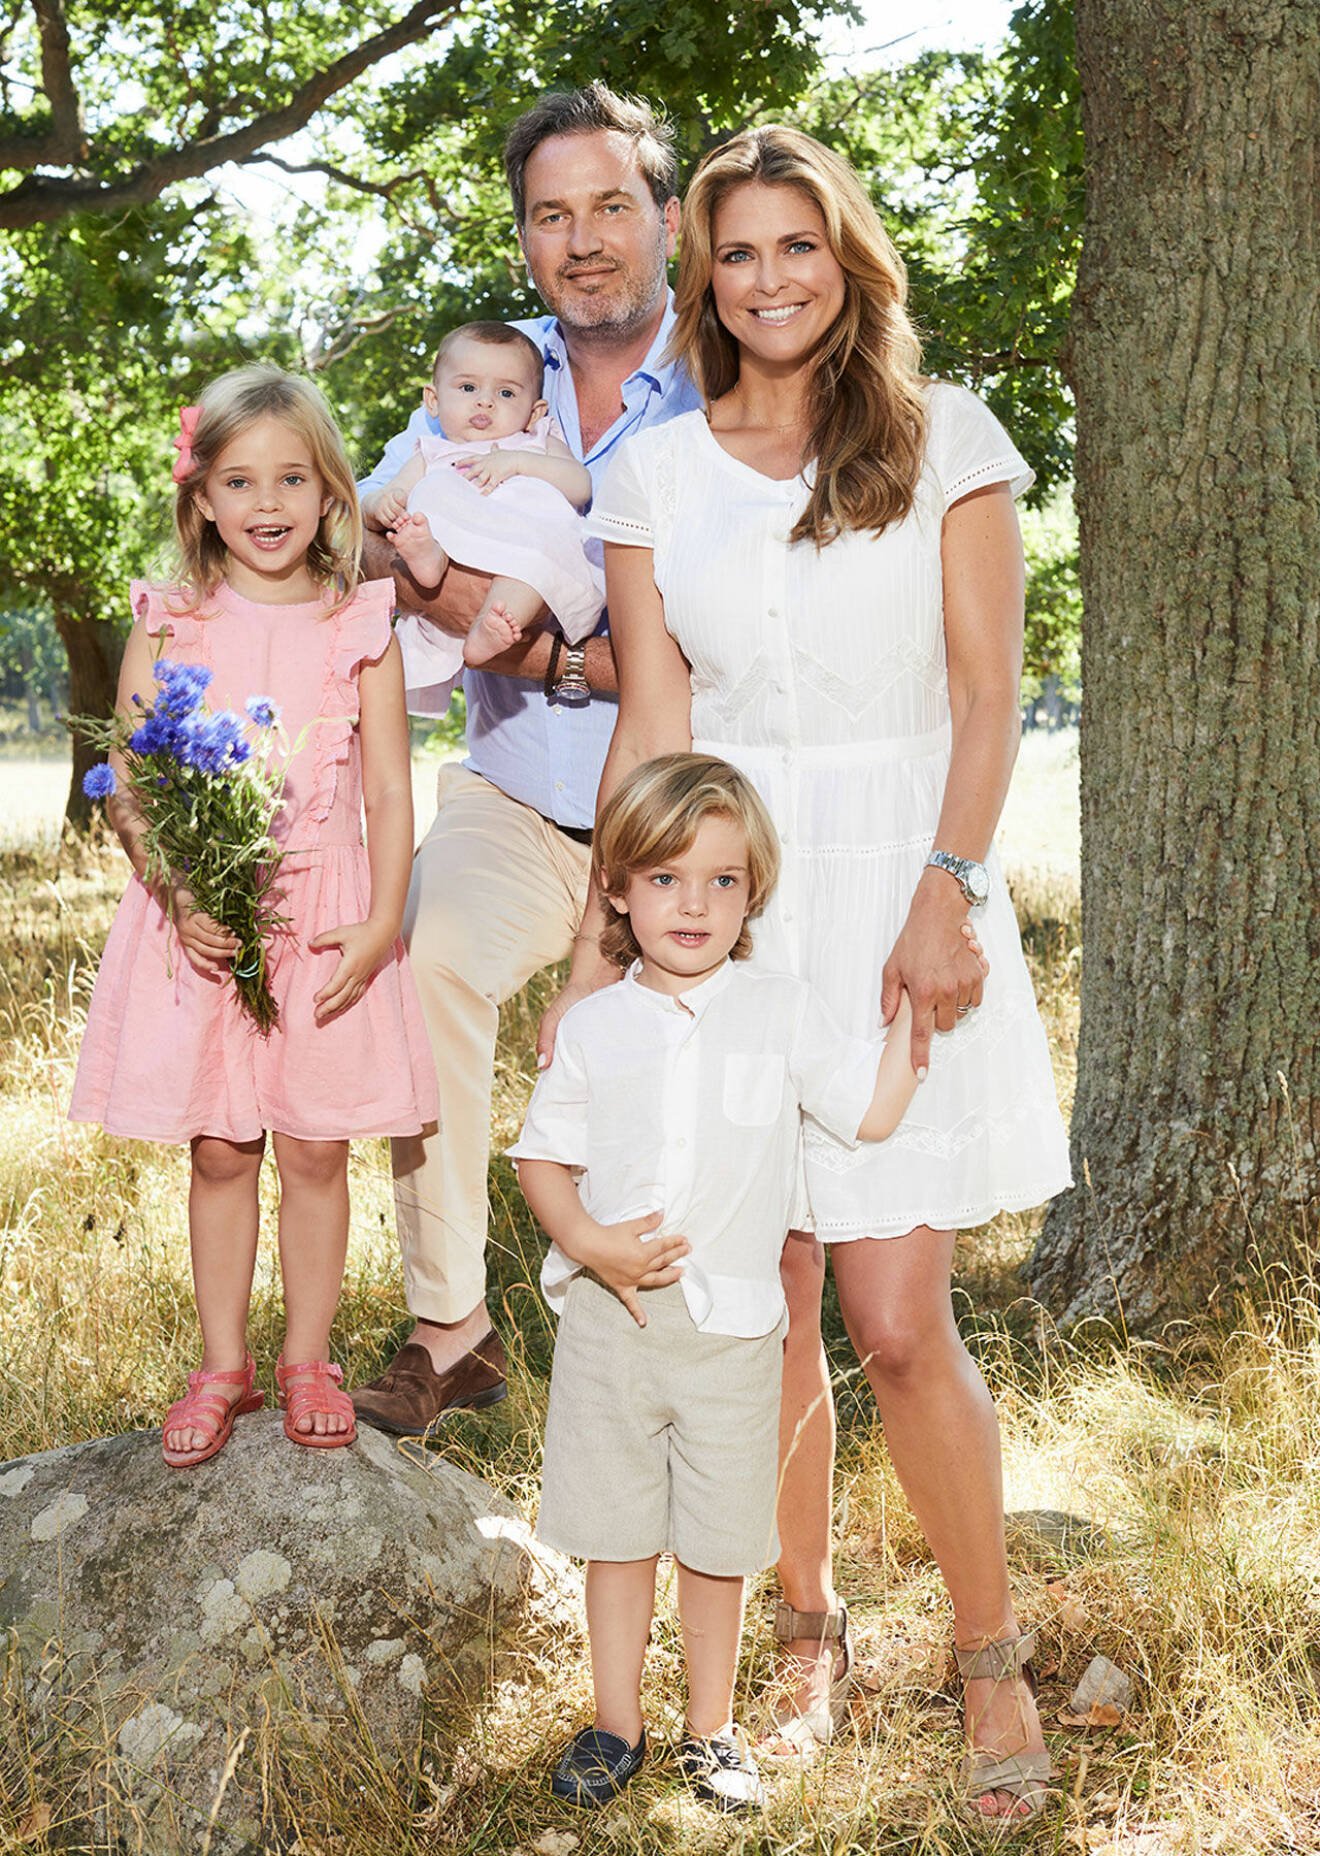 Prinsessan Madeleine och Chris O'Neill med sina barn: prinsessan Leonore, prinsessan Adrienne och prins Nicolas.